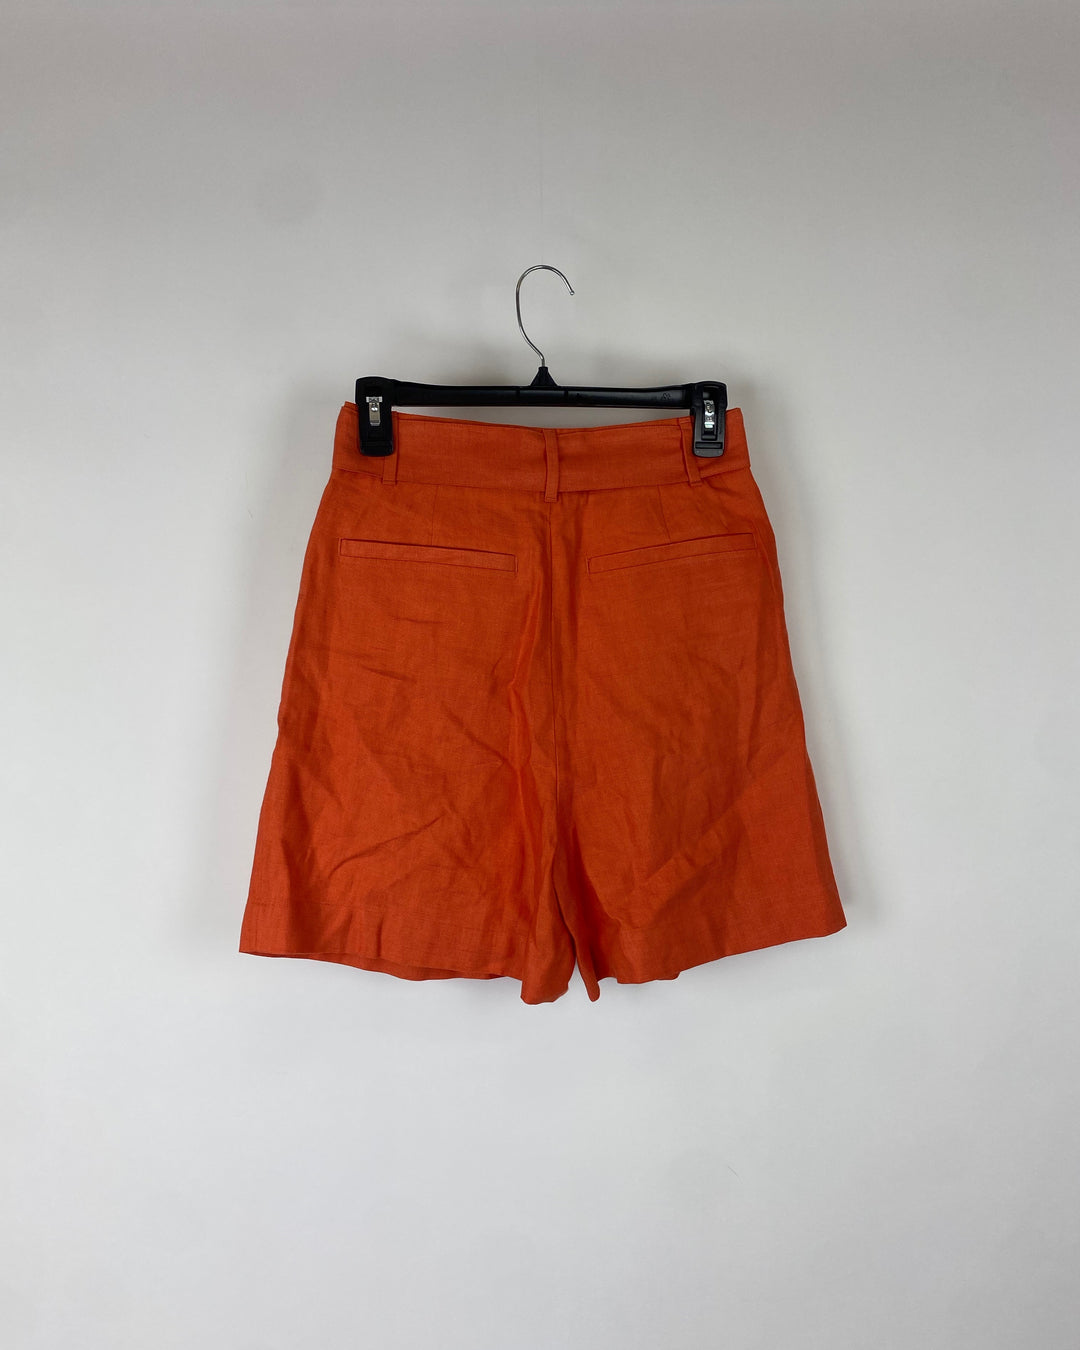 Orange Bow Tied Shorts - Size 2